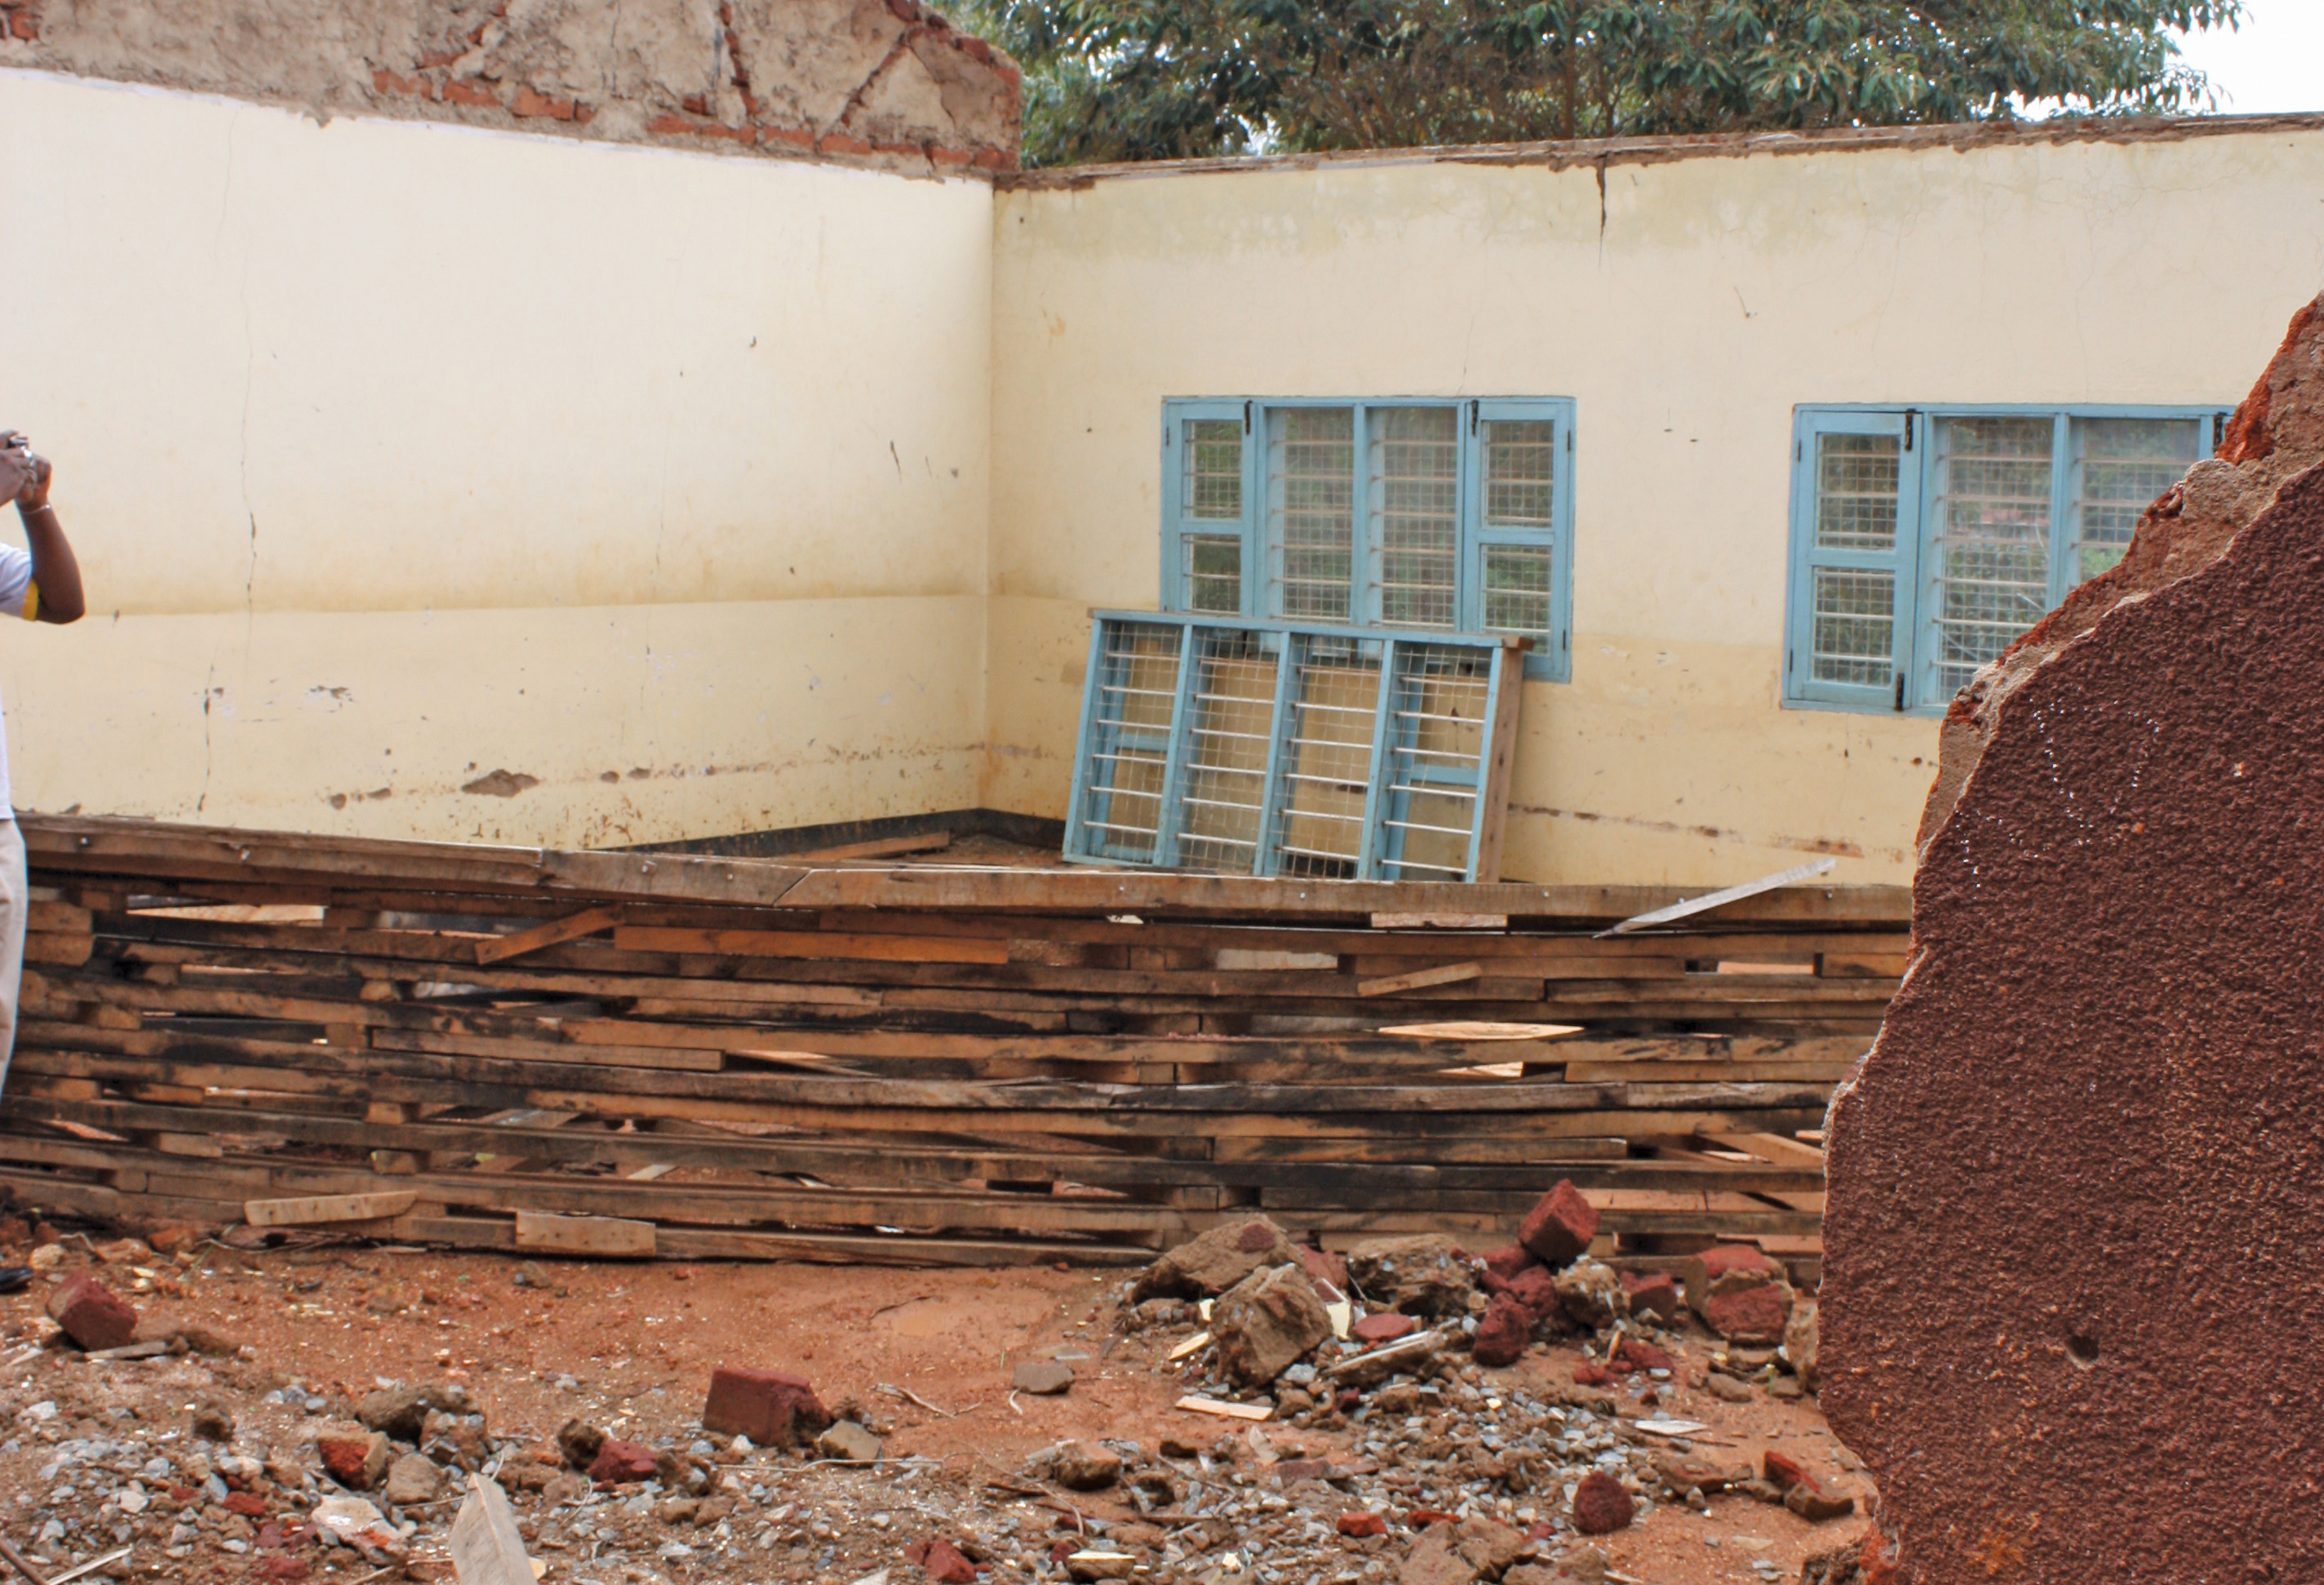 re-building school in Africa